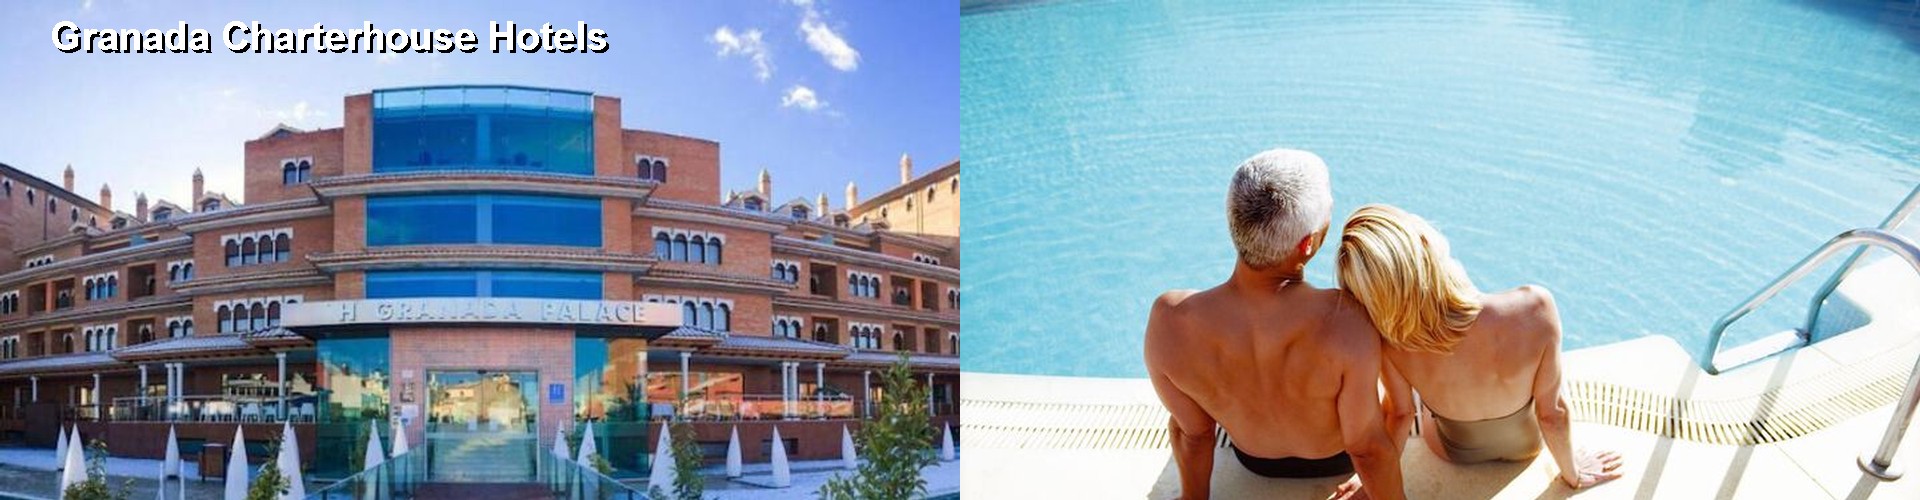 5 Best Hotels near Granada Charterhouse